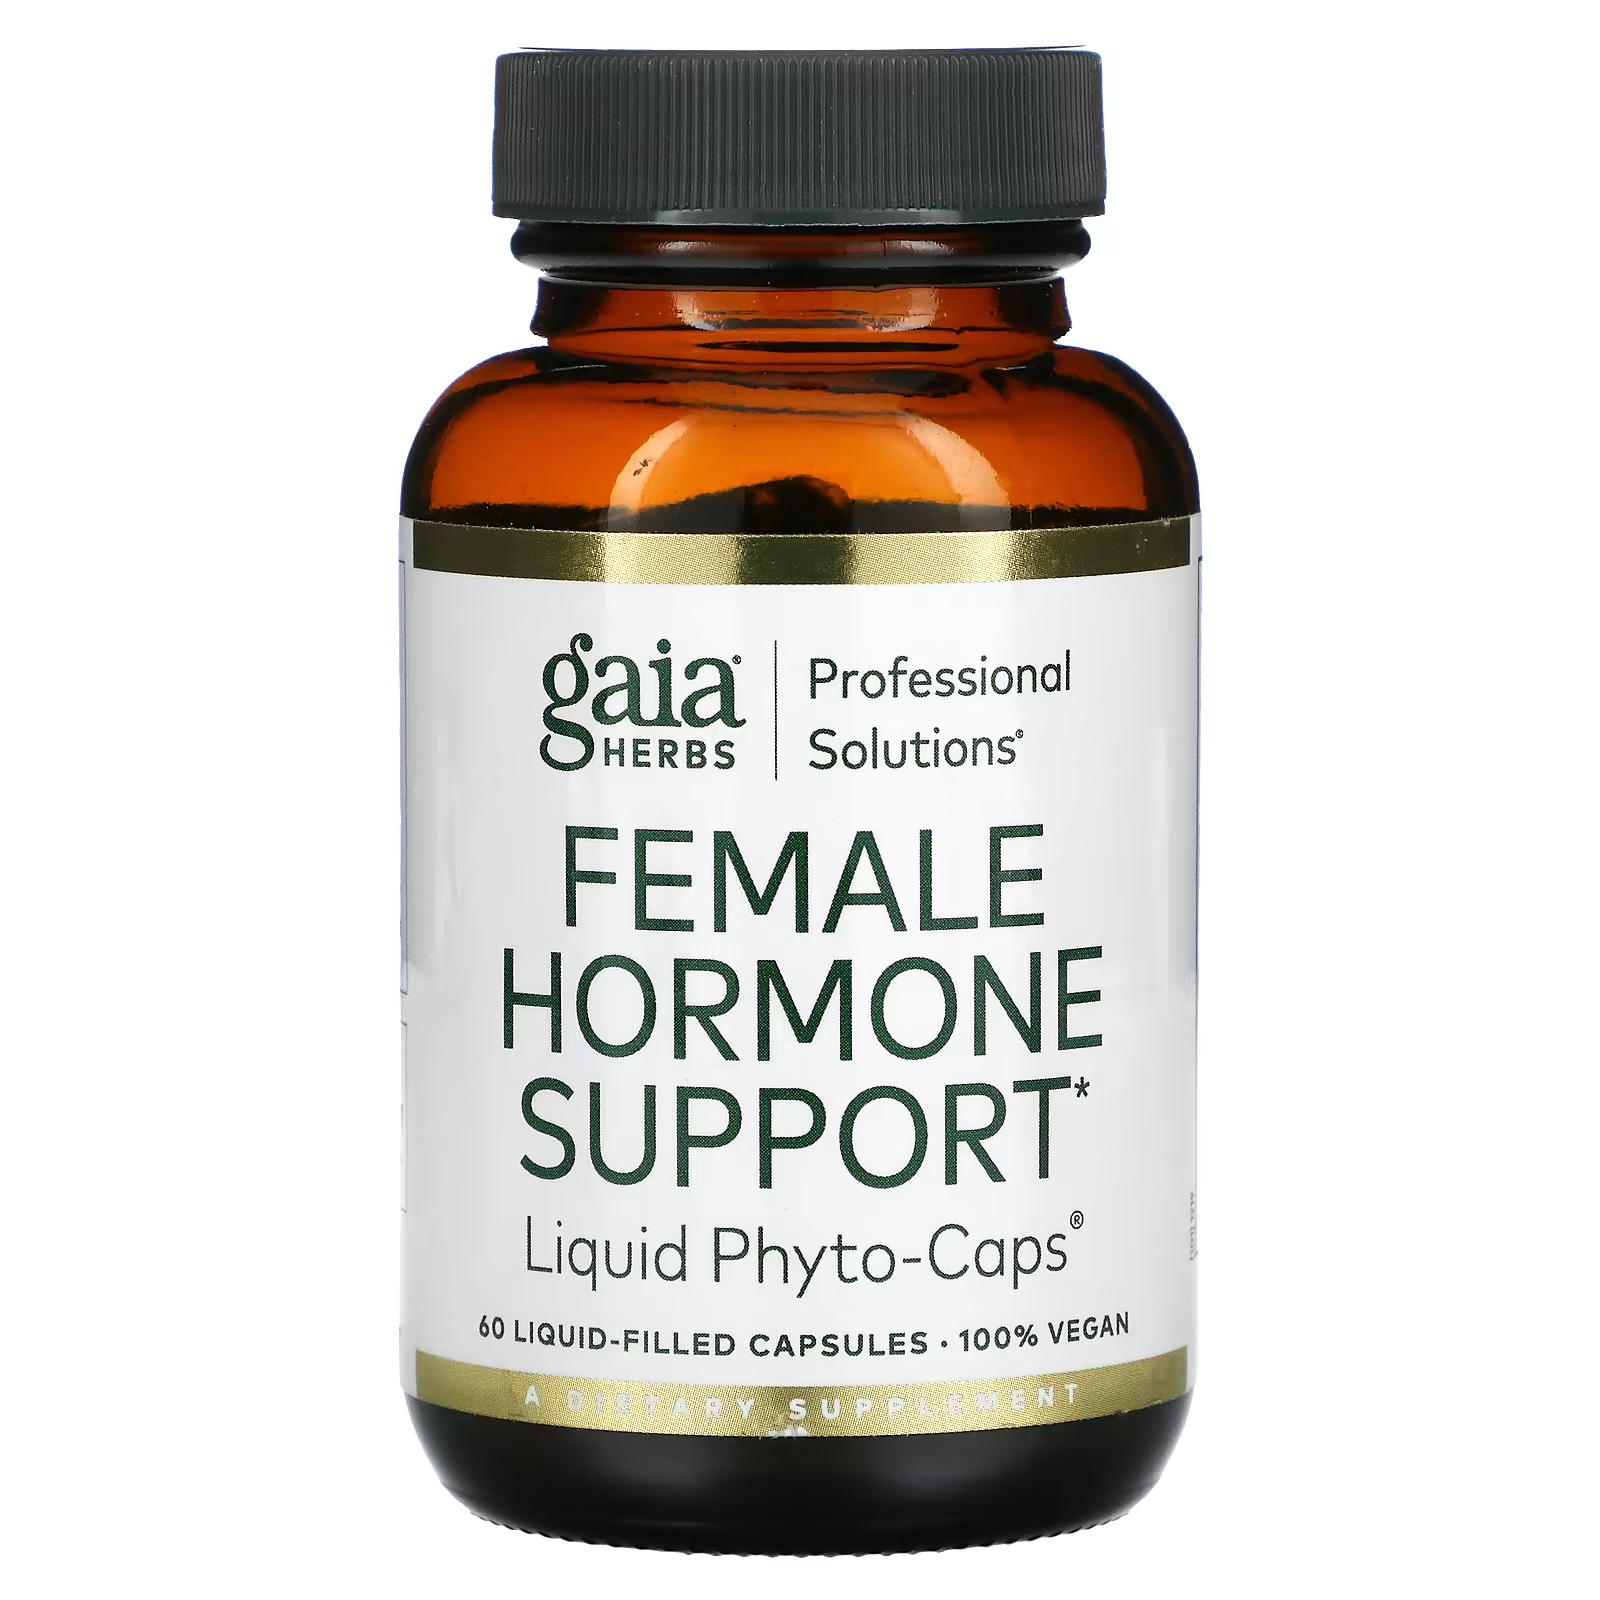 Пищевая добавка Gaia Herbs Professional Solutions поддержка женских гормонов, 60 капсул phyto пищевая добавка для укрепления волос и ногтей 120 капсул х 2 шт phyto phytophanere